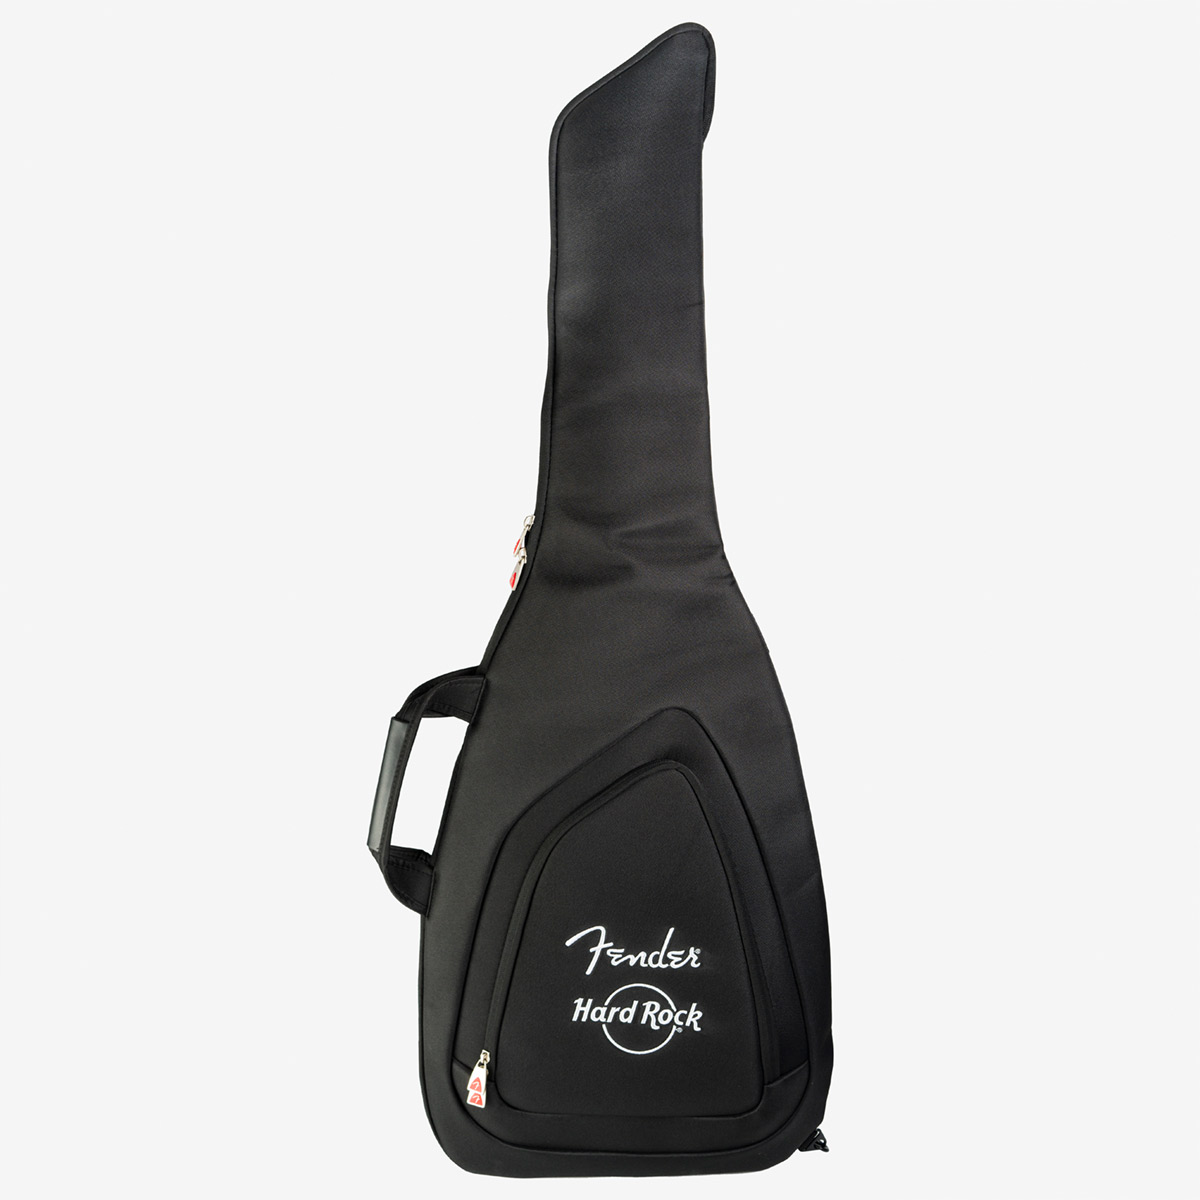 Fender x Hard Rock Electric Guitar Gig Bag in Black image number 1